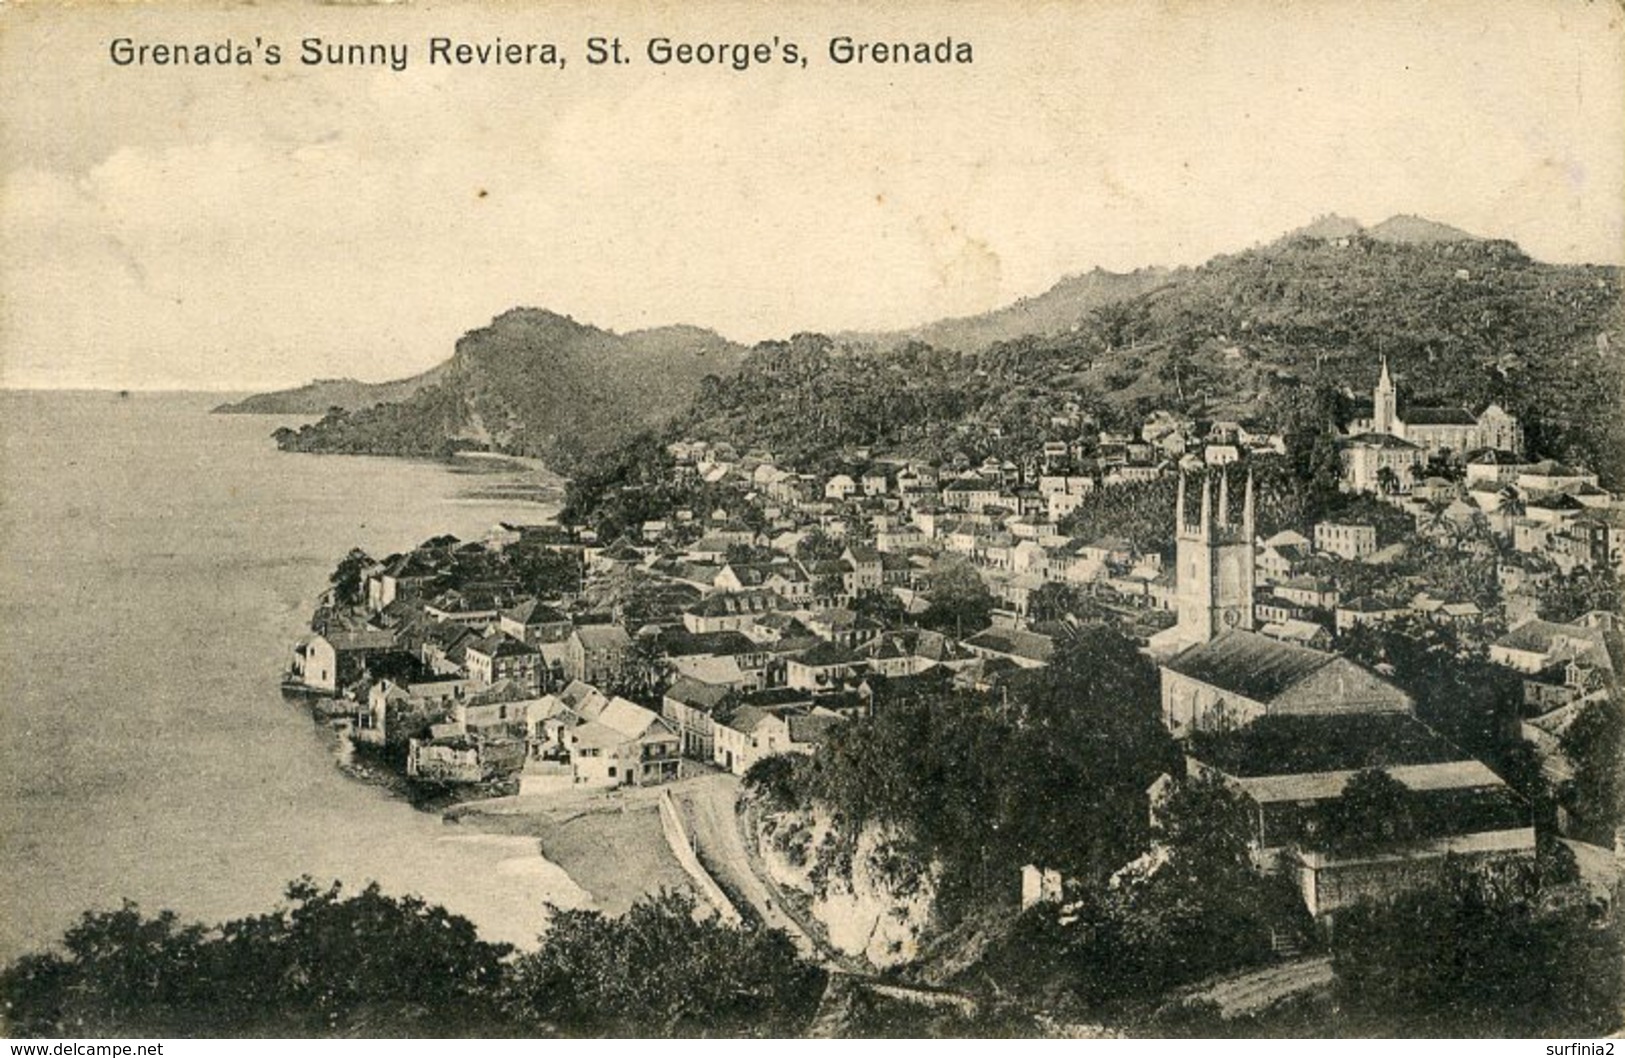 GRANADA - SUNNY RIVIERA, ST GEORGE'S - Grenada